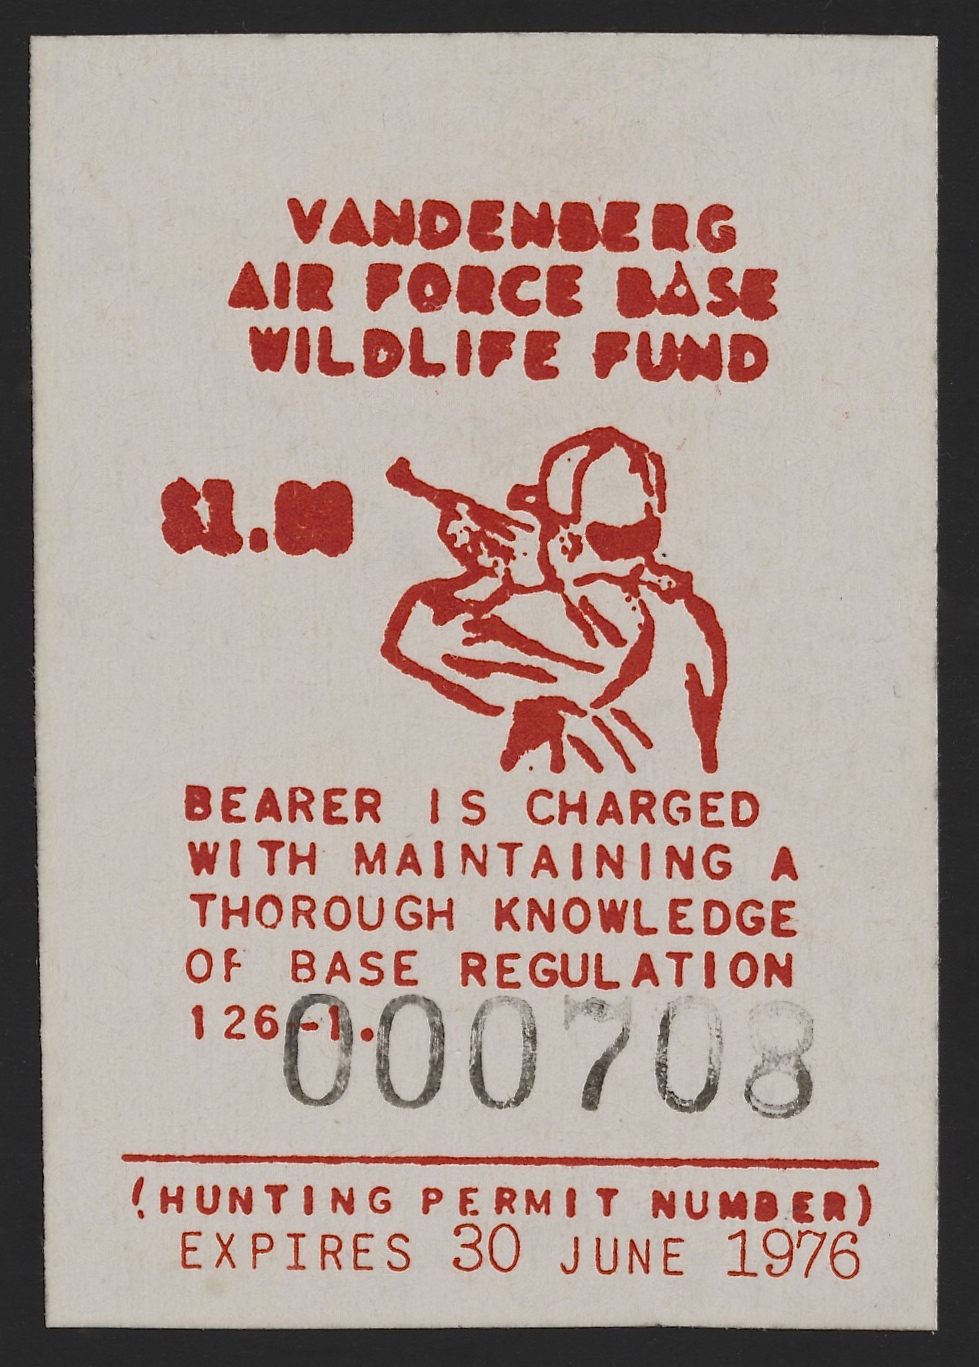 1975-76 VAFB Hunting